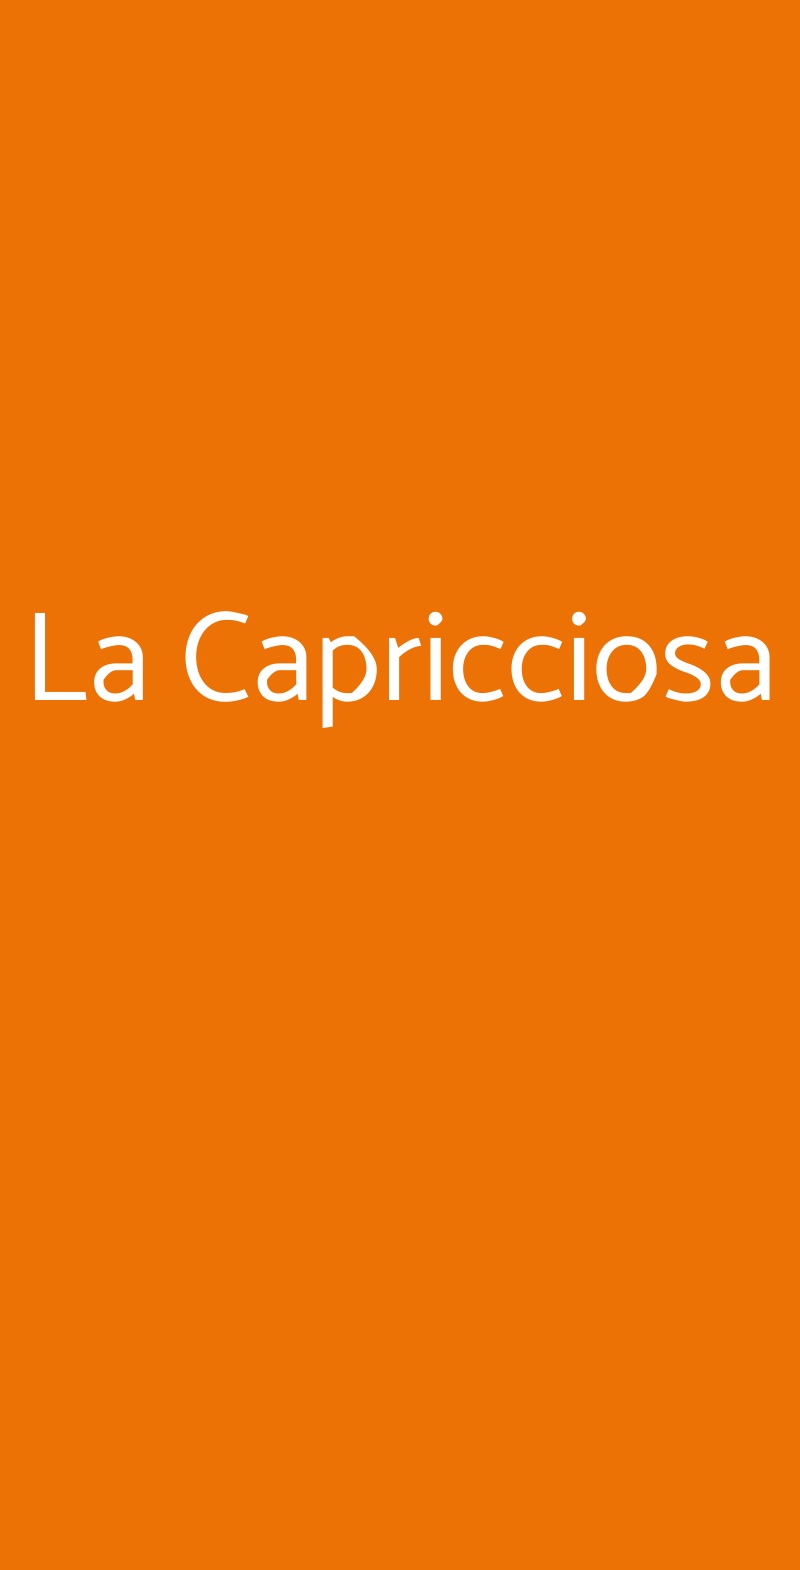 La Capricciosa Reggio Calabria menù 1 pagina